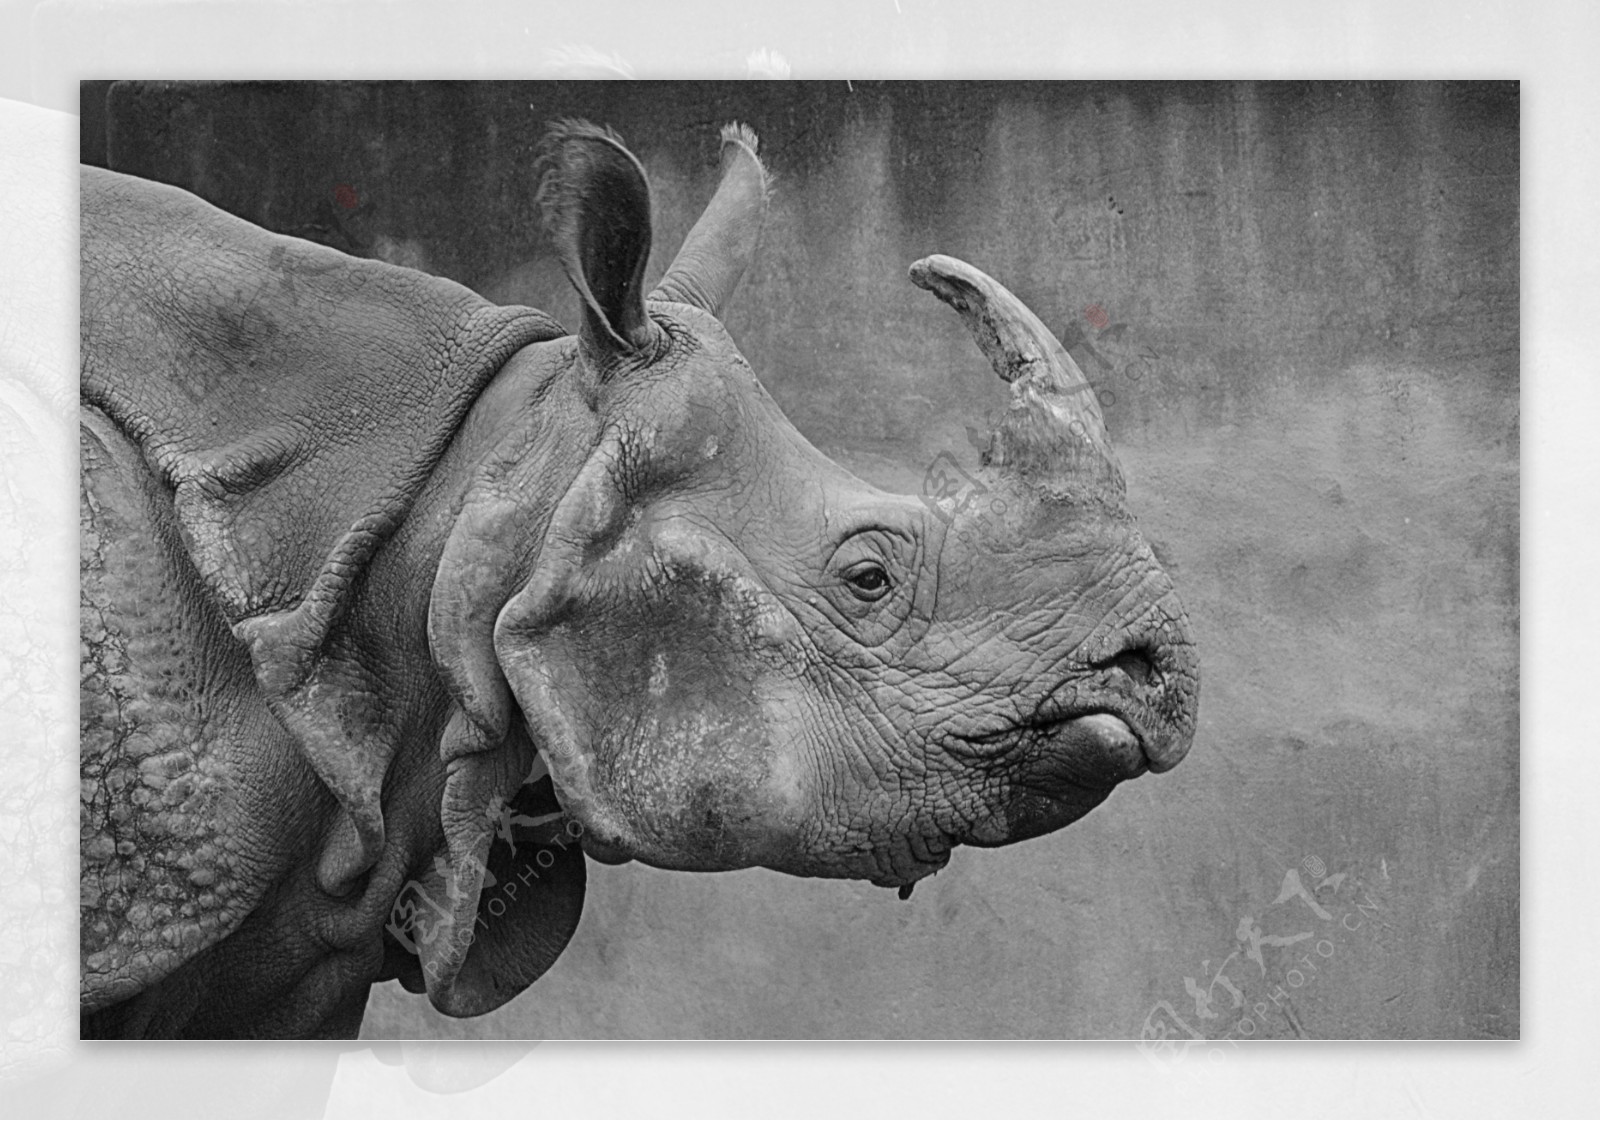 图片素材 : 黑与白, 野生动物, 动物园, 哺乳动物, 动物群, 犀牛, 印度大象, 单色摄影 4289x2860 - - 740293 ...